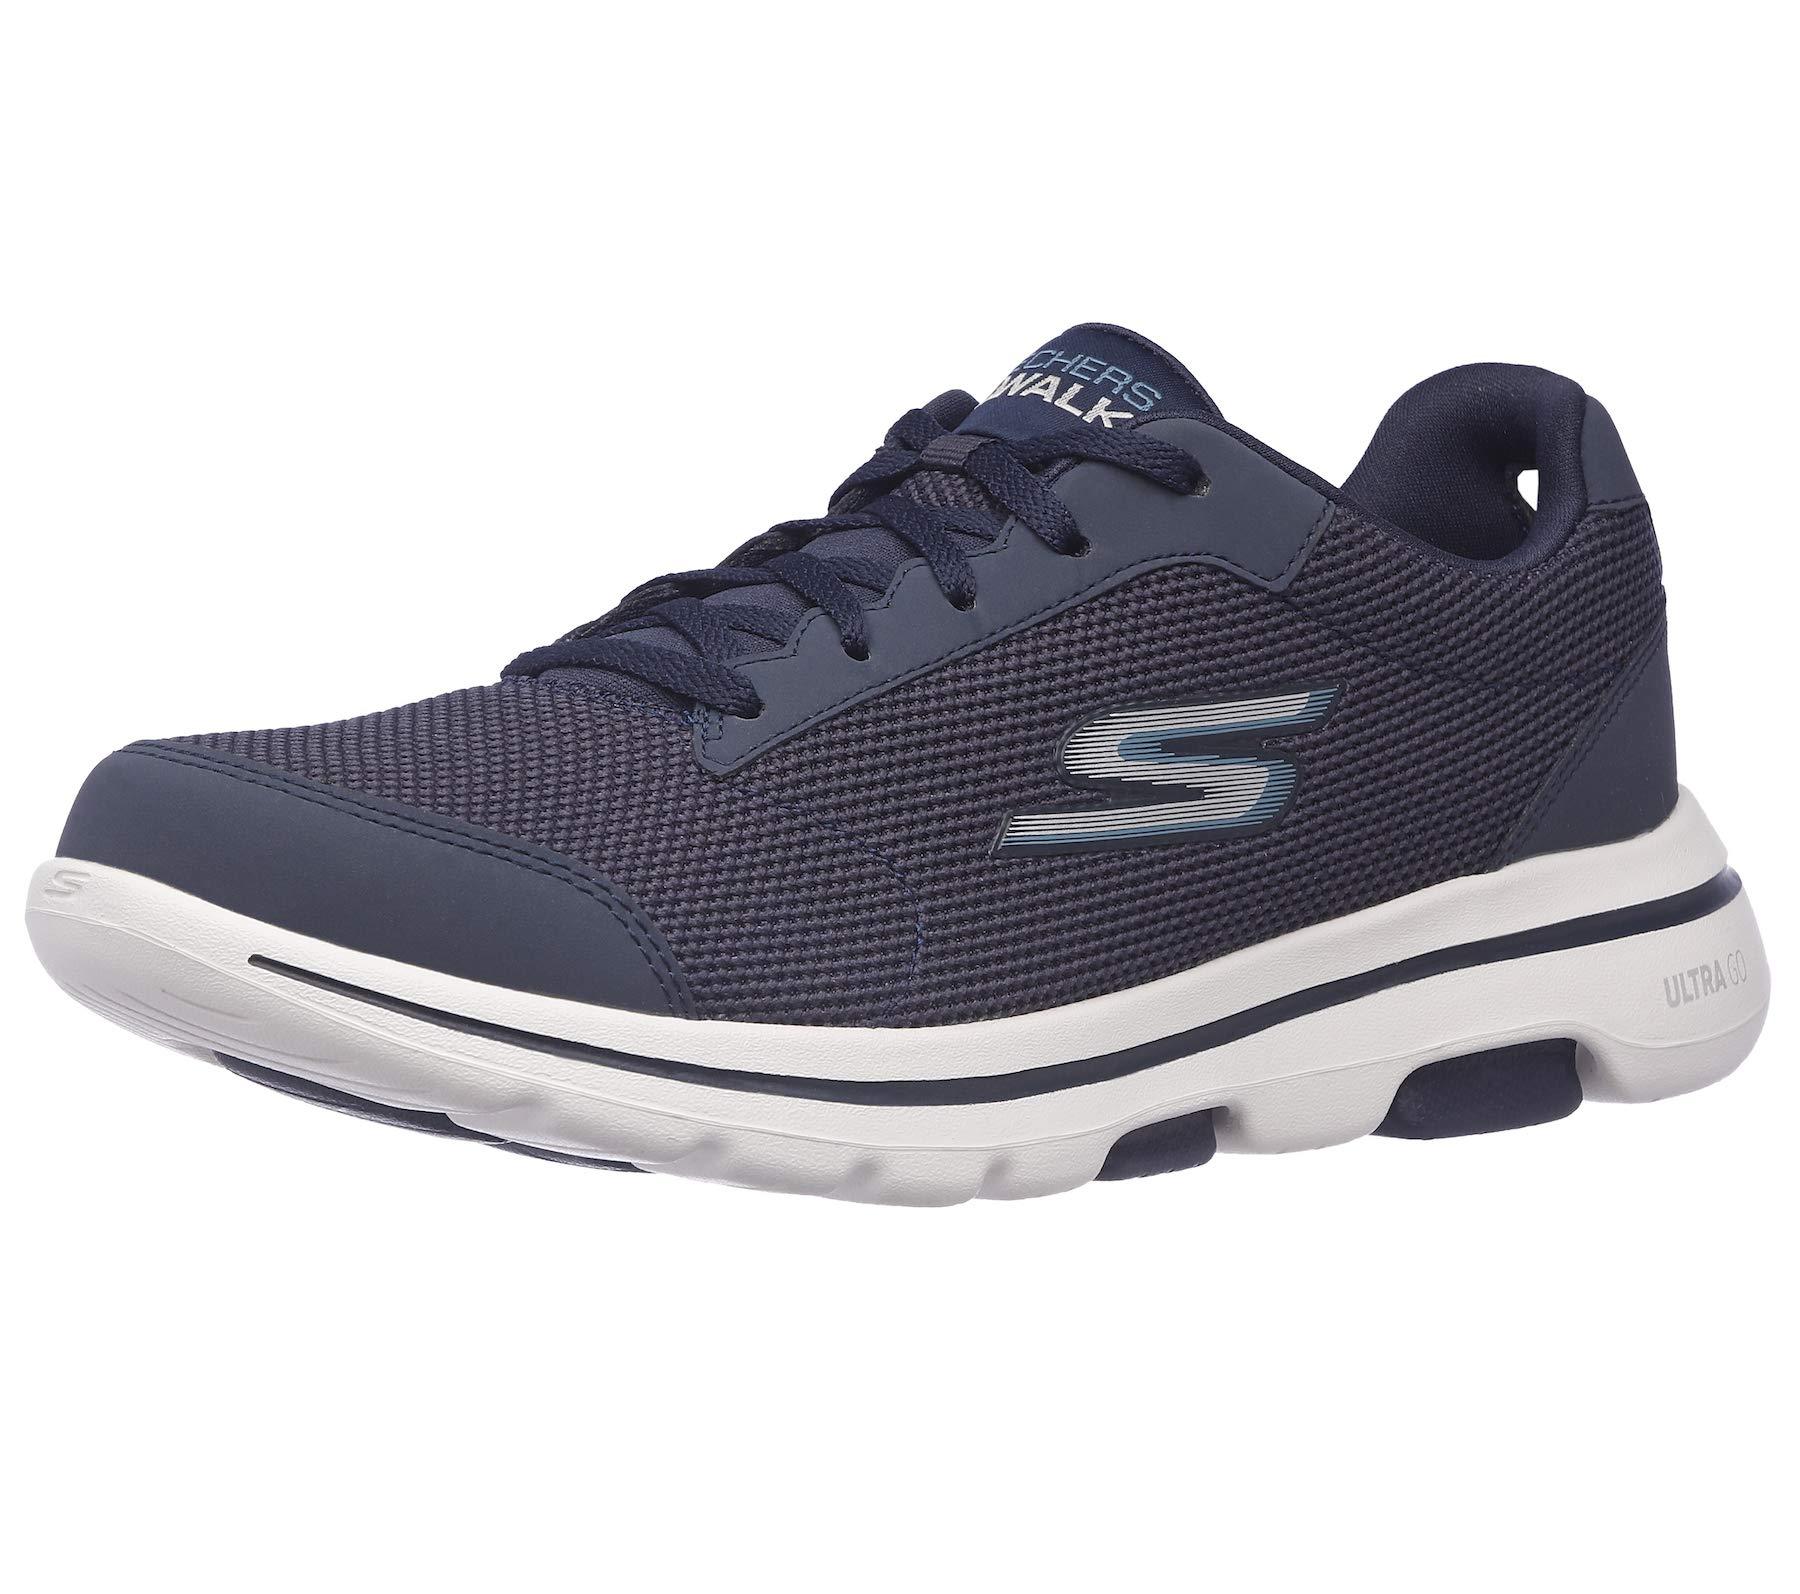 skechers go walk shoes on sale